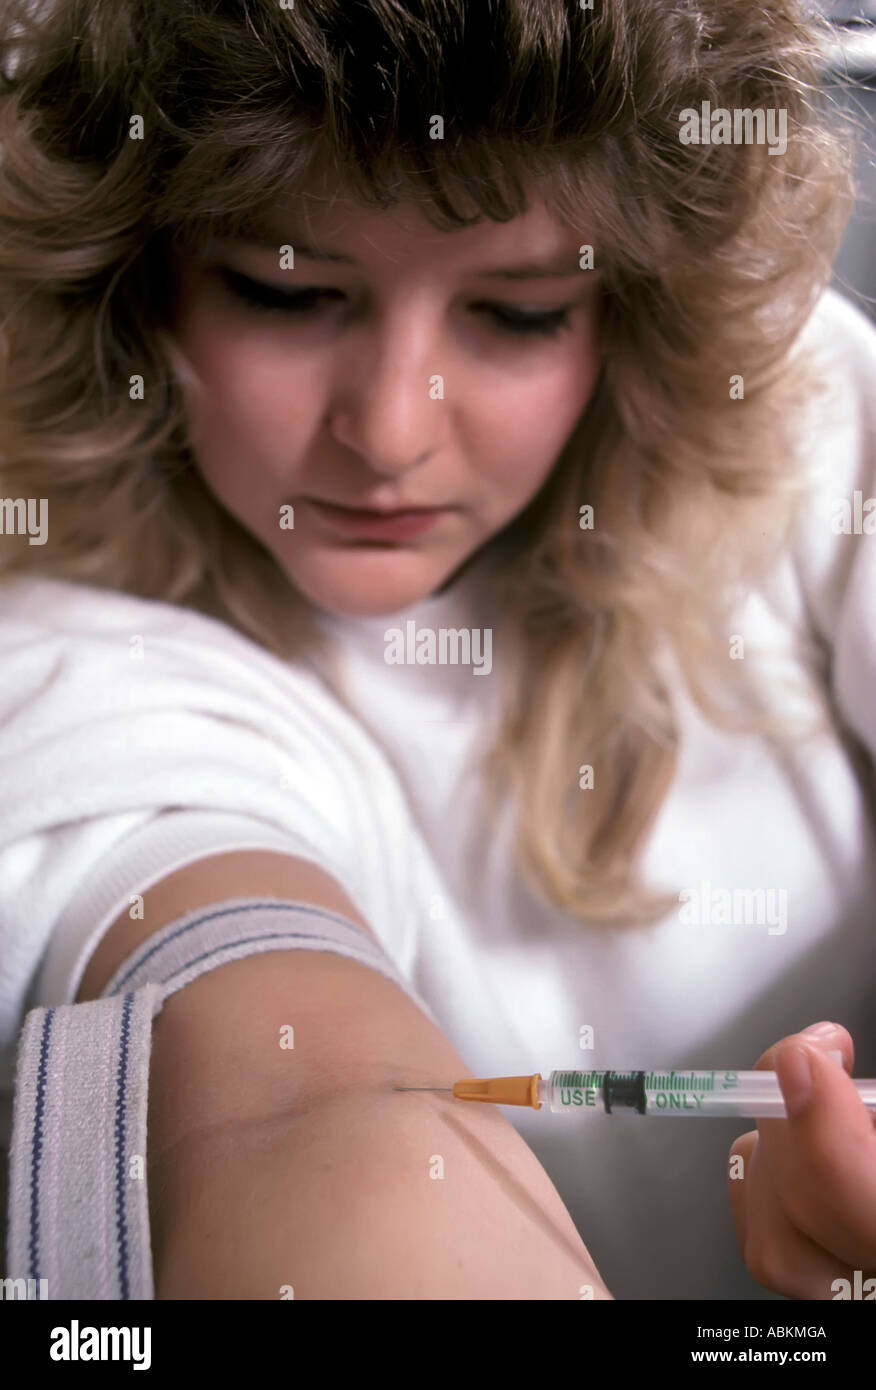 Femme s'injecte des drogues dans son bras pour se droguer et satisfaire une dépendance aux drogues Banque D'Images